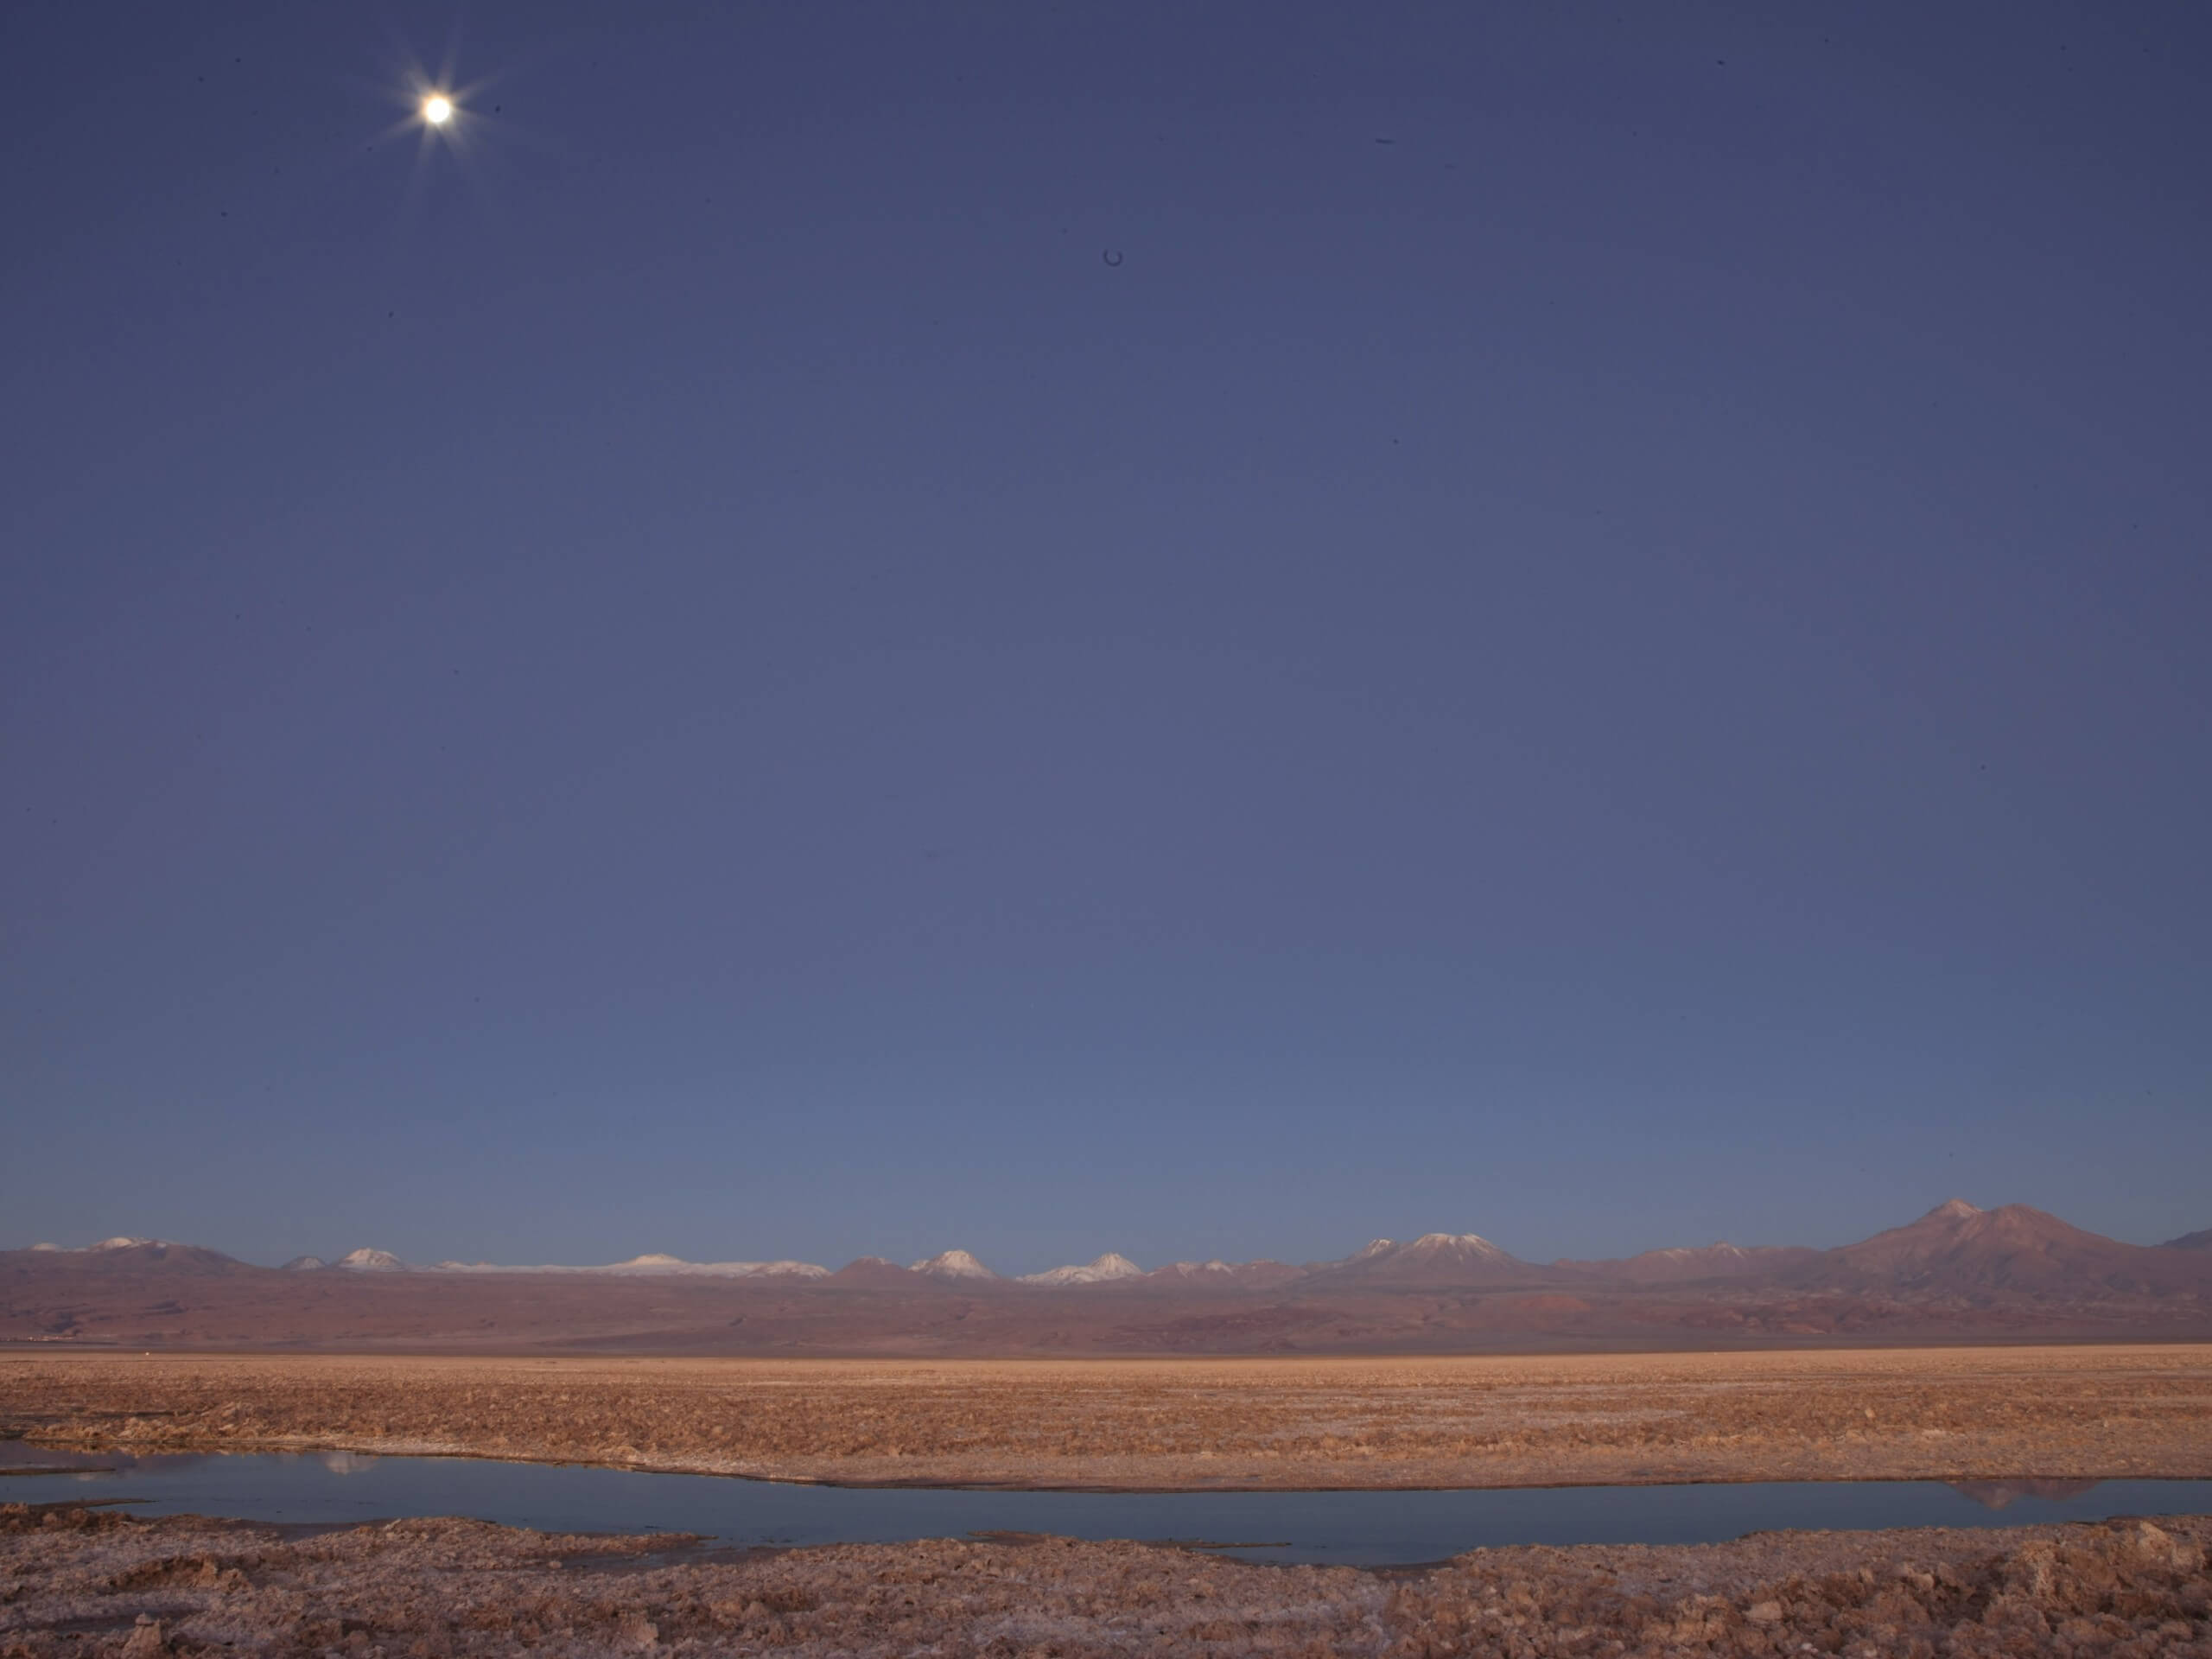 Salar de Atacama during the night